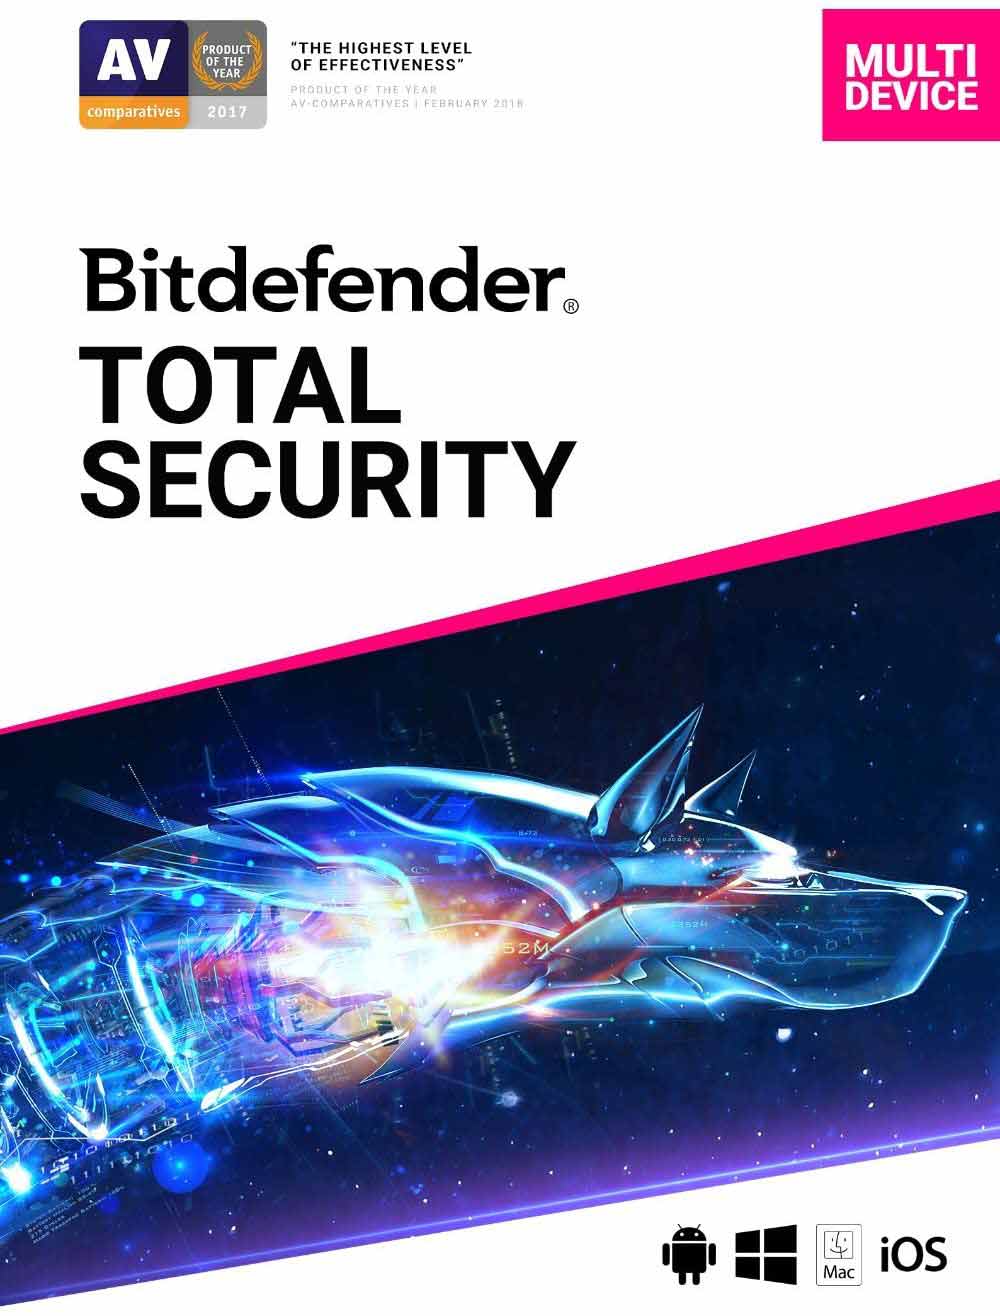 Bitdefender TOTAL SECURITY menjadi antivirus terbaik menurut avtest